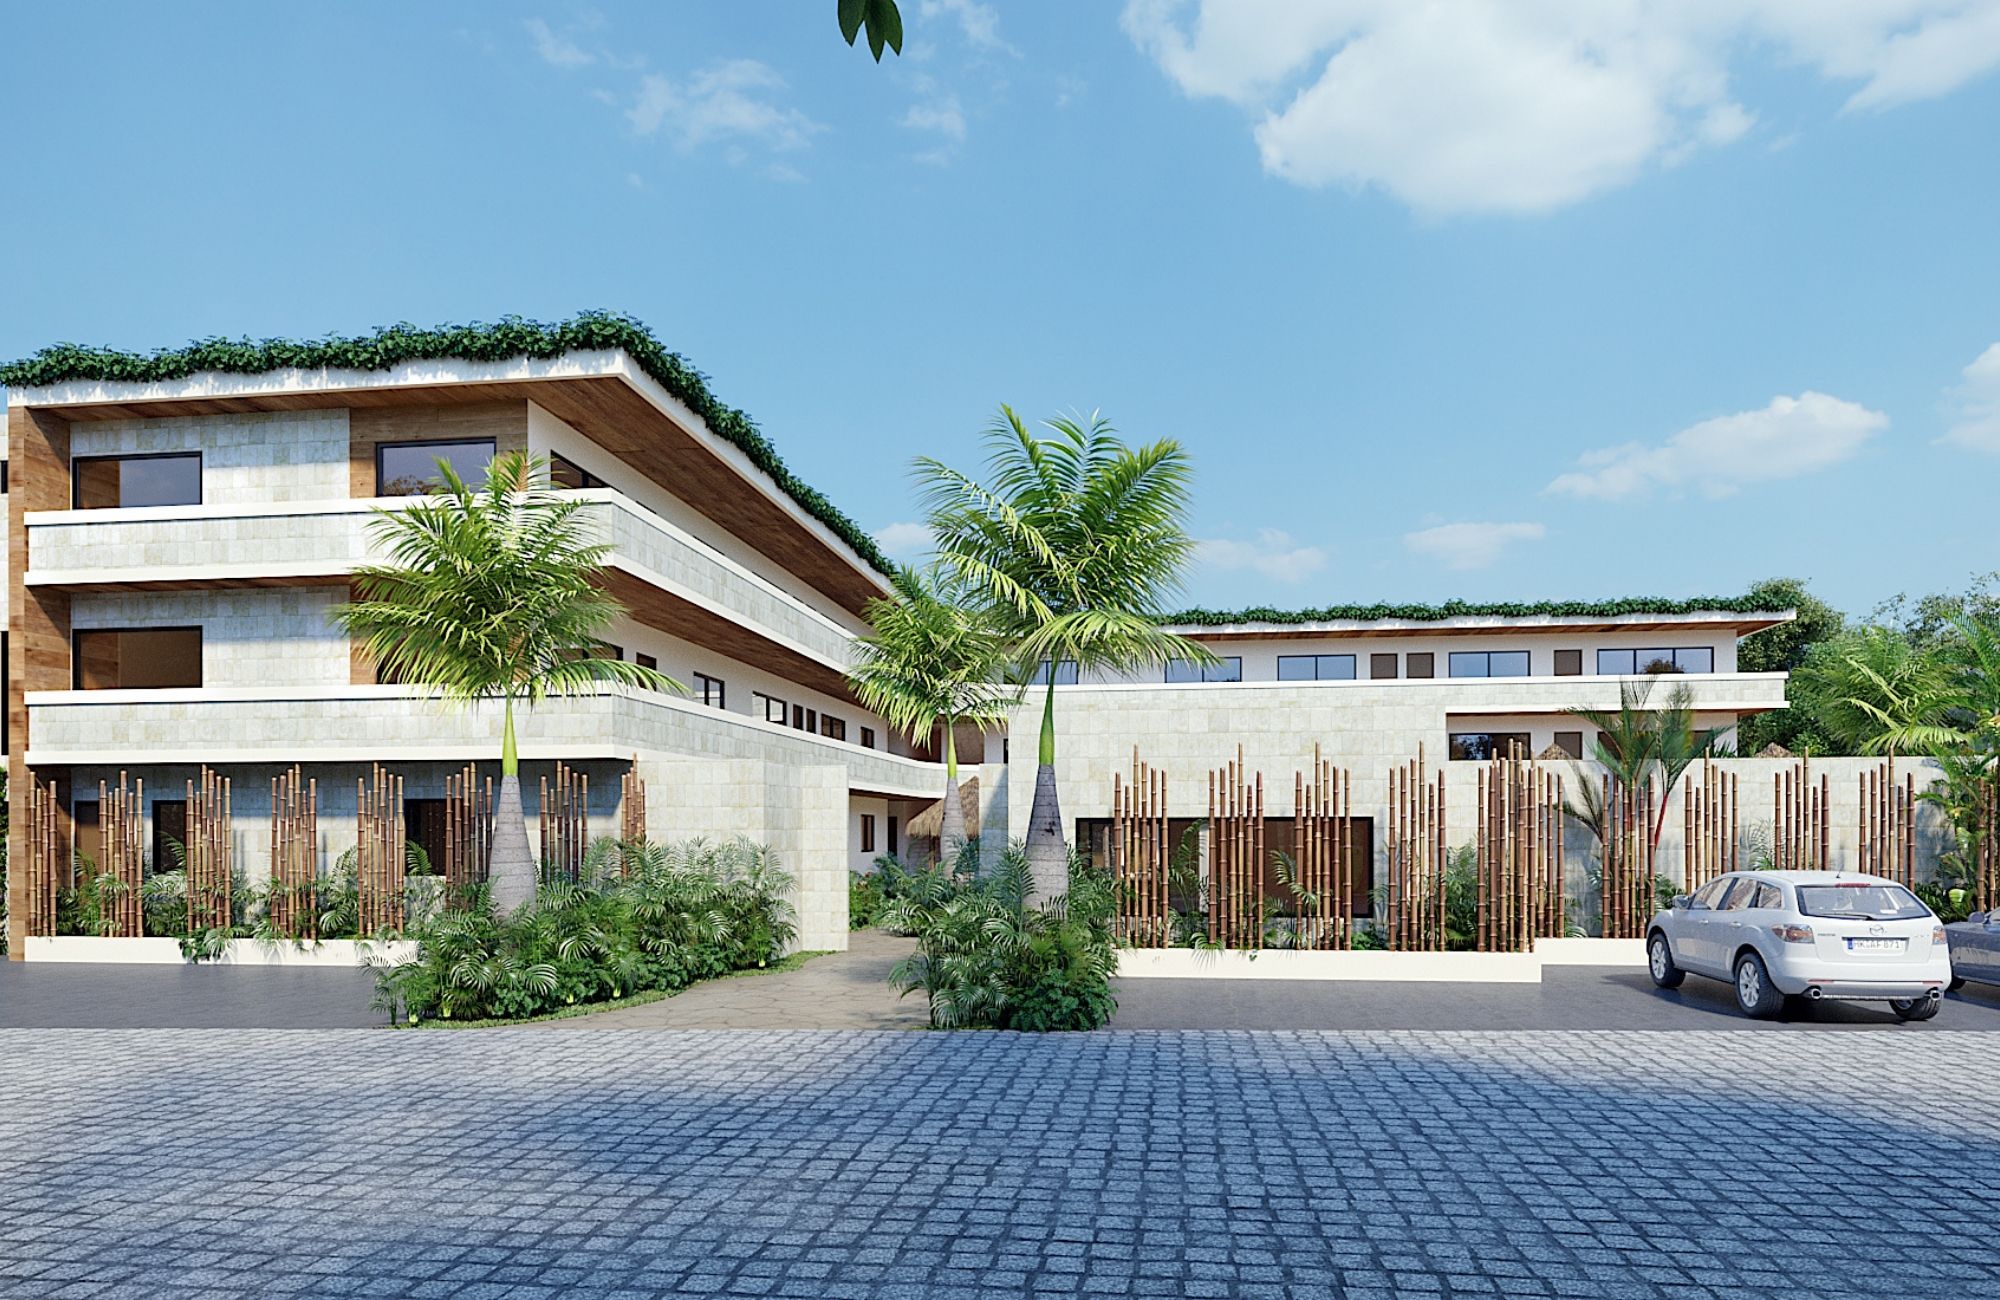  Desarrollos Inmobiliarios en Preventa en Tulum, Quintana Roo, México.